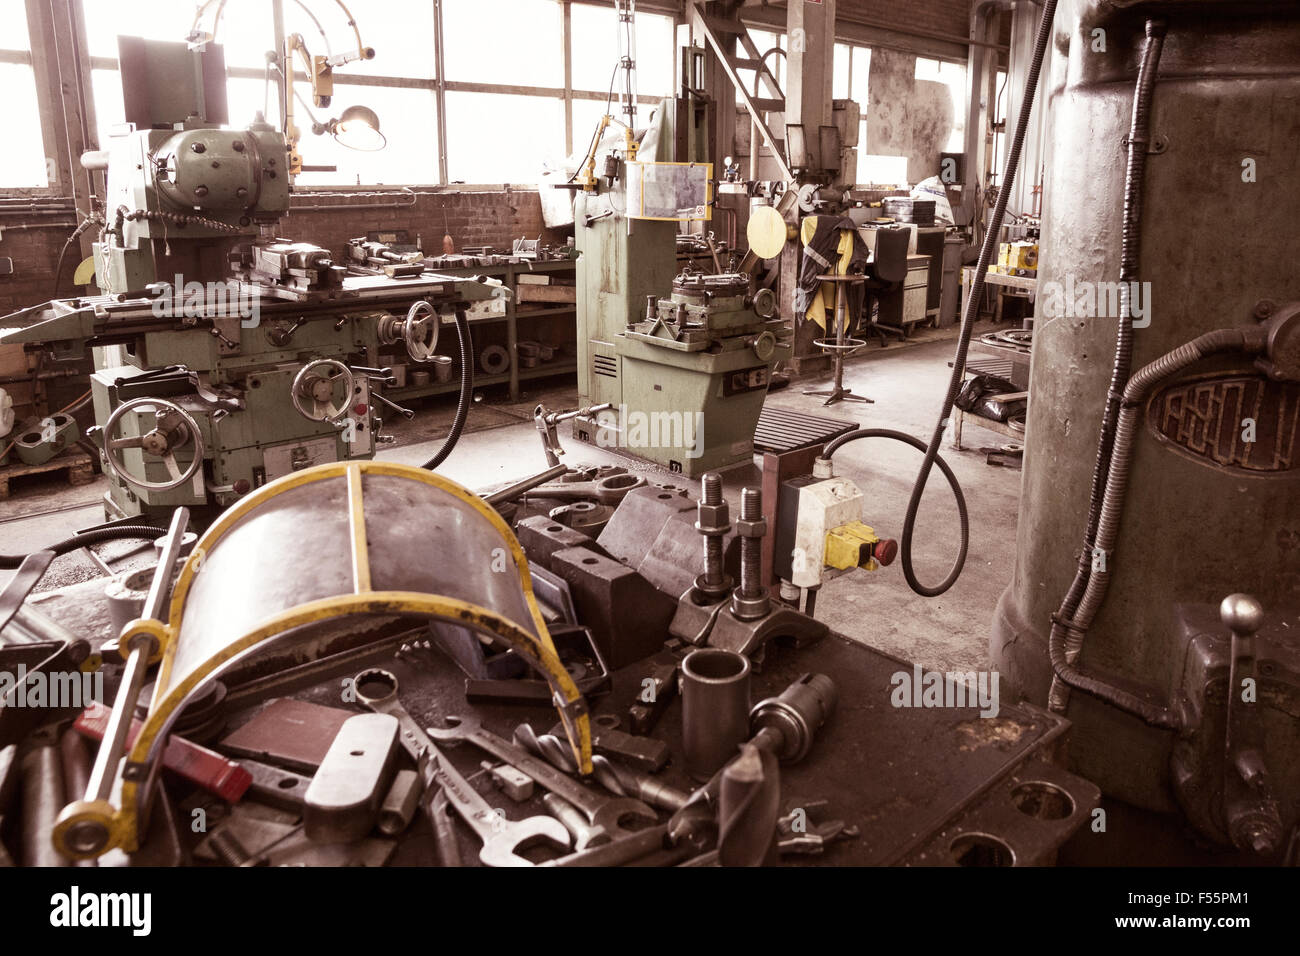 Herramientas y equipo en una fábrica industrial Foto de stock